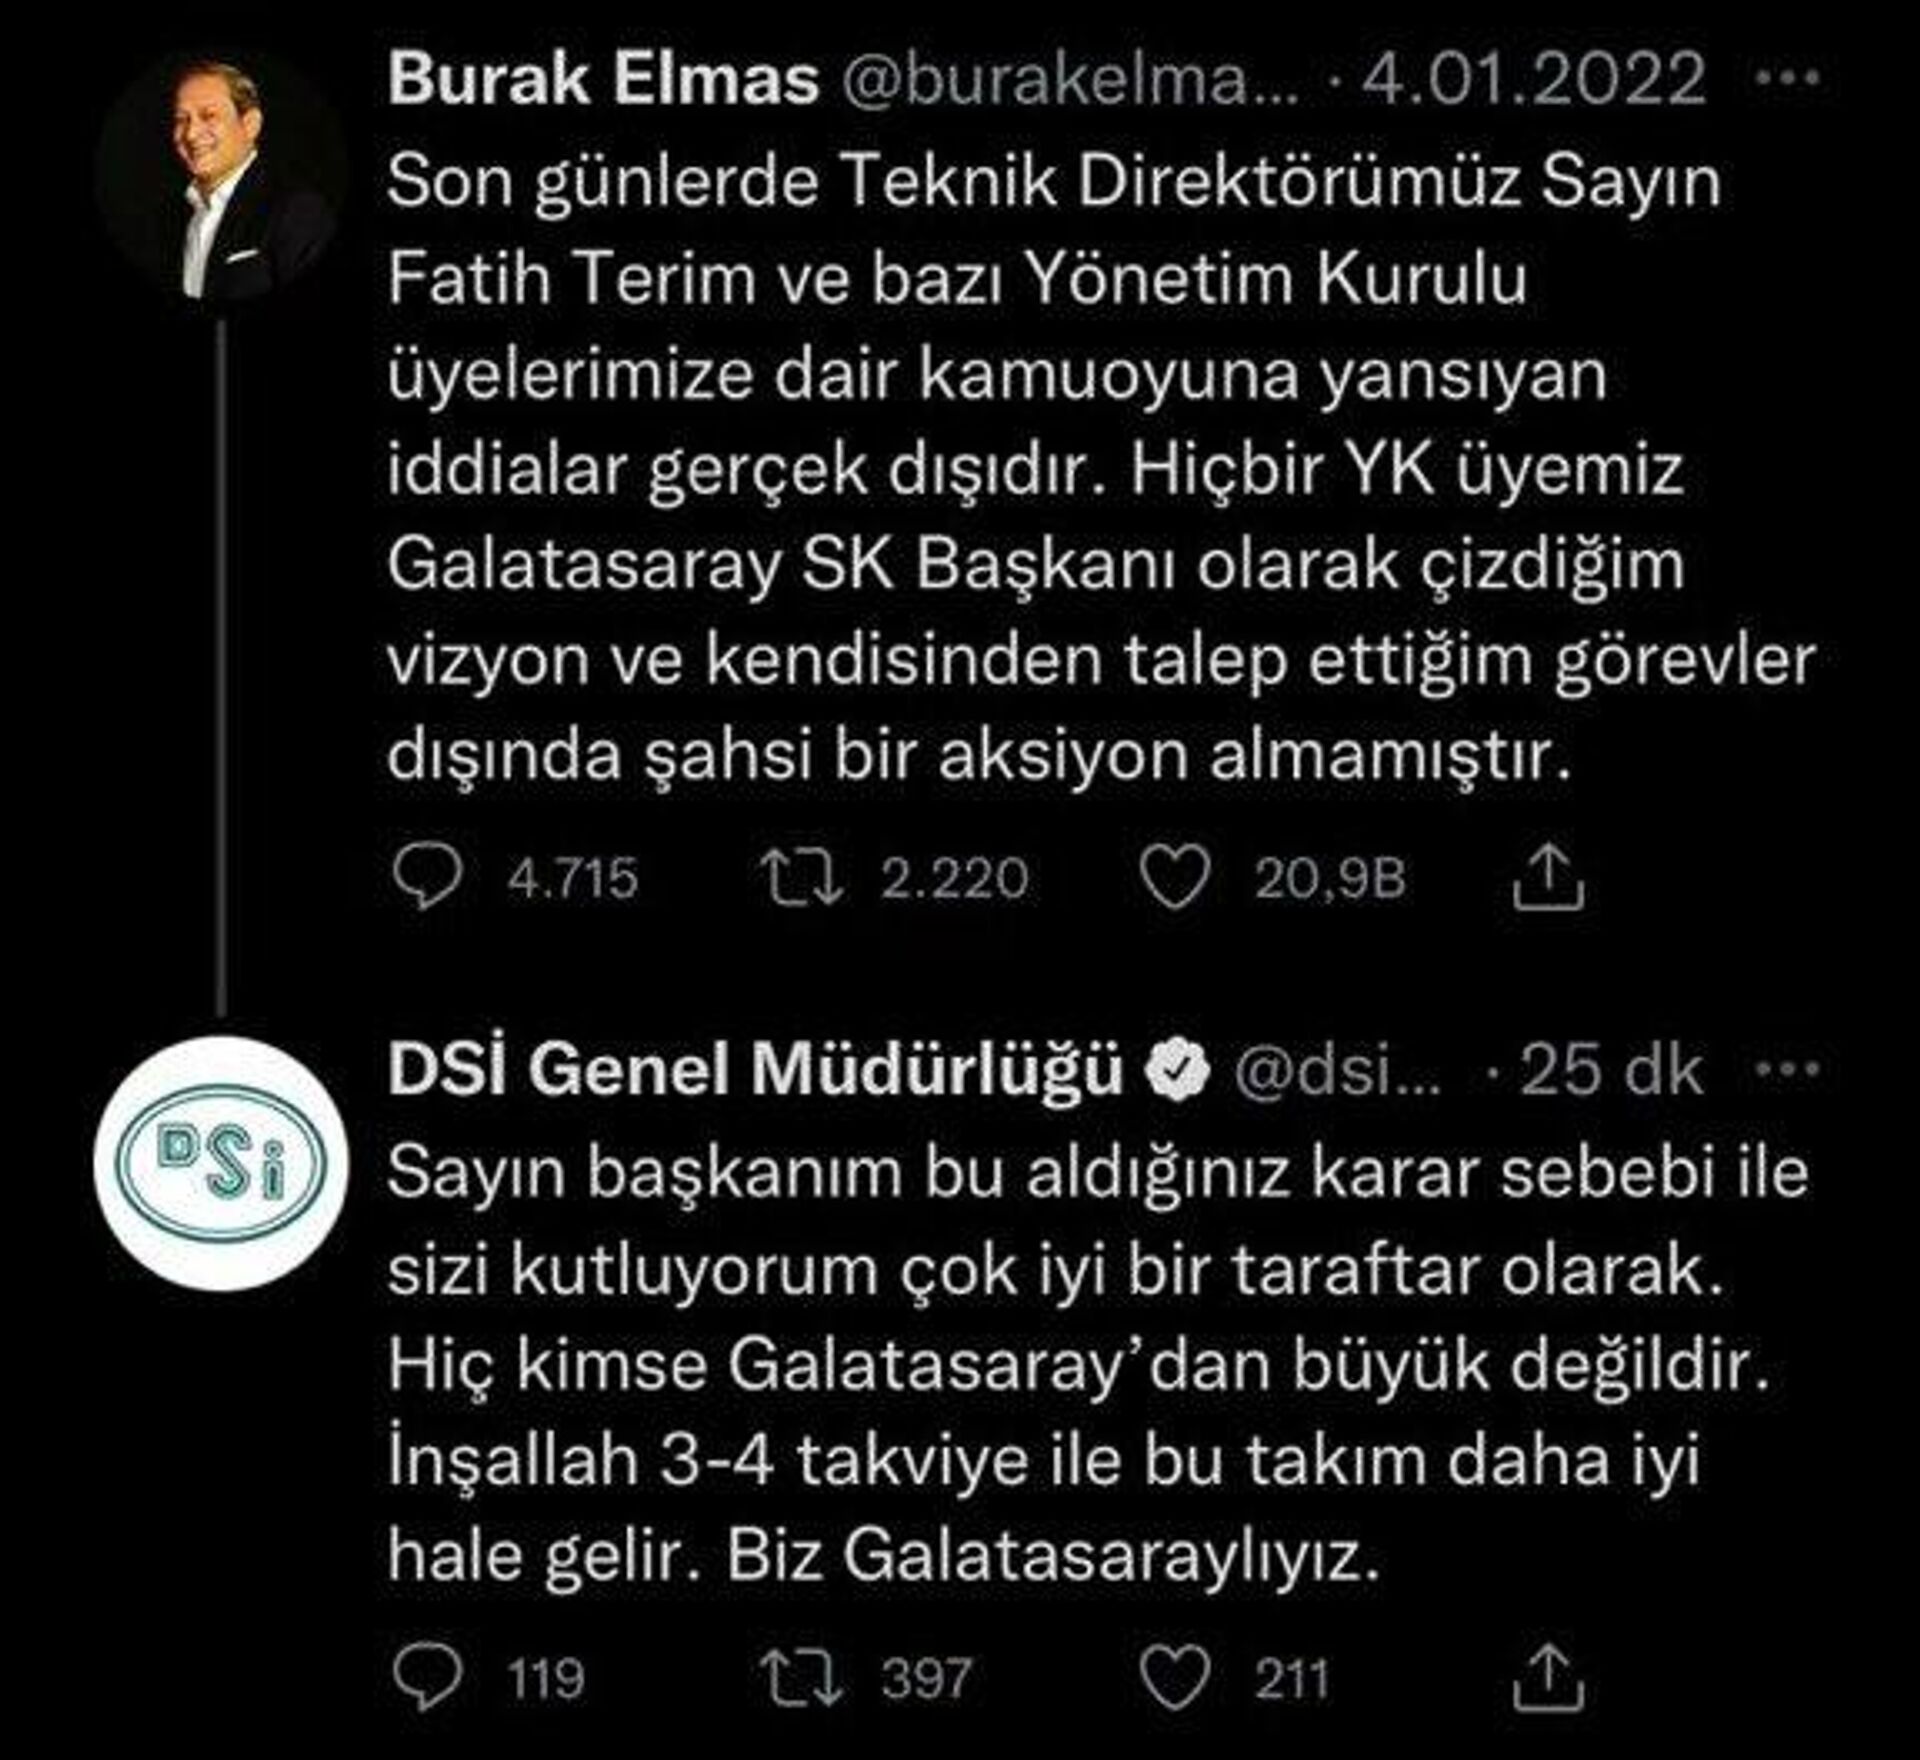 DSİ Genel Müdürlüğü'nden Burak Elmas'ın 'Fatih Terim kararına' destek paylaşımı: Sizi kutluyorum - Sputnik Türkiye, 1920, 13.01.2022